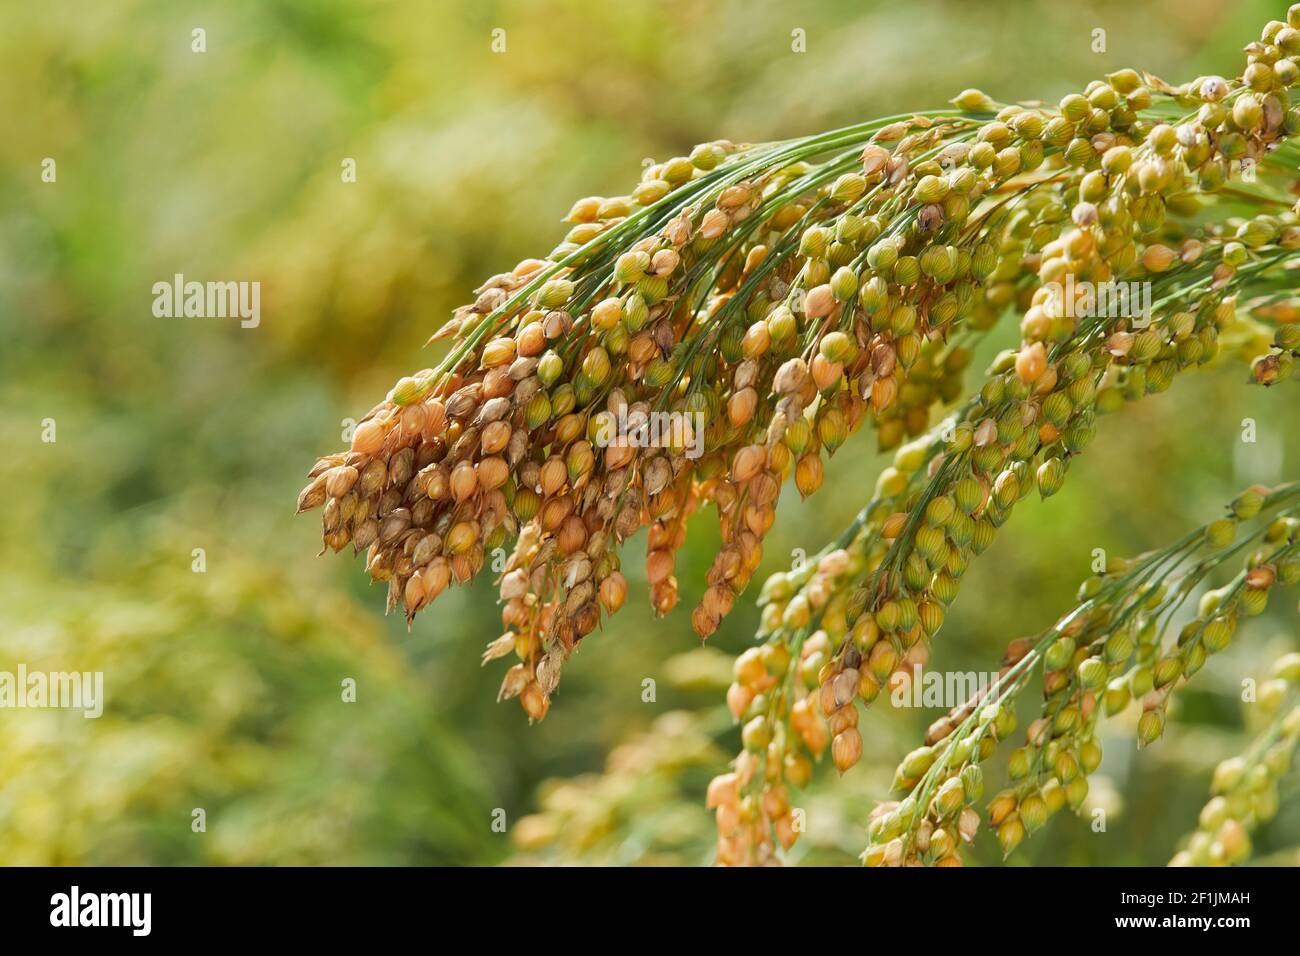 Plante de Panicum miliaceum, communément connue sous le nom de millet Proso ou millet commun, sur un fond vert jaune flou, gros plan Banque D'Images